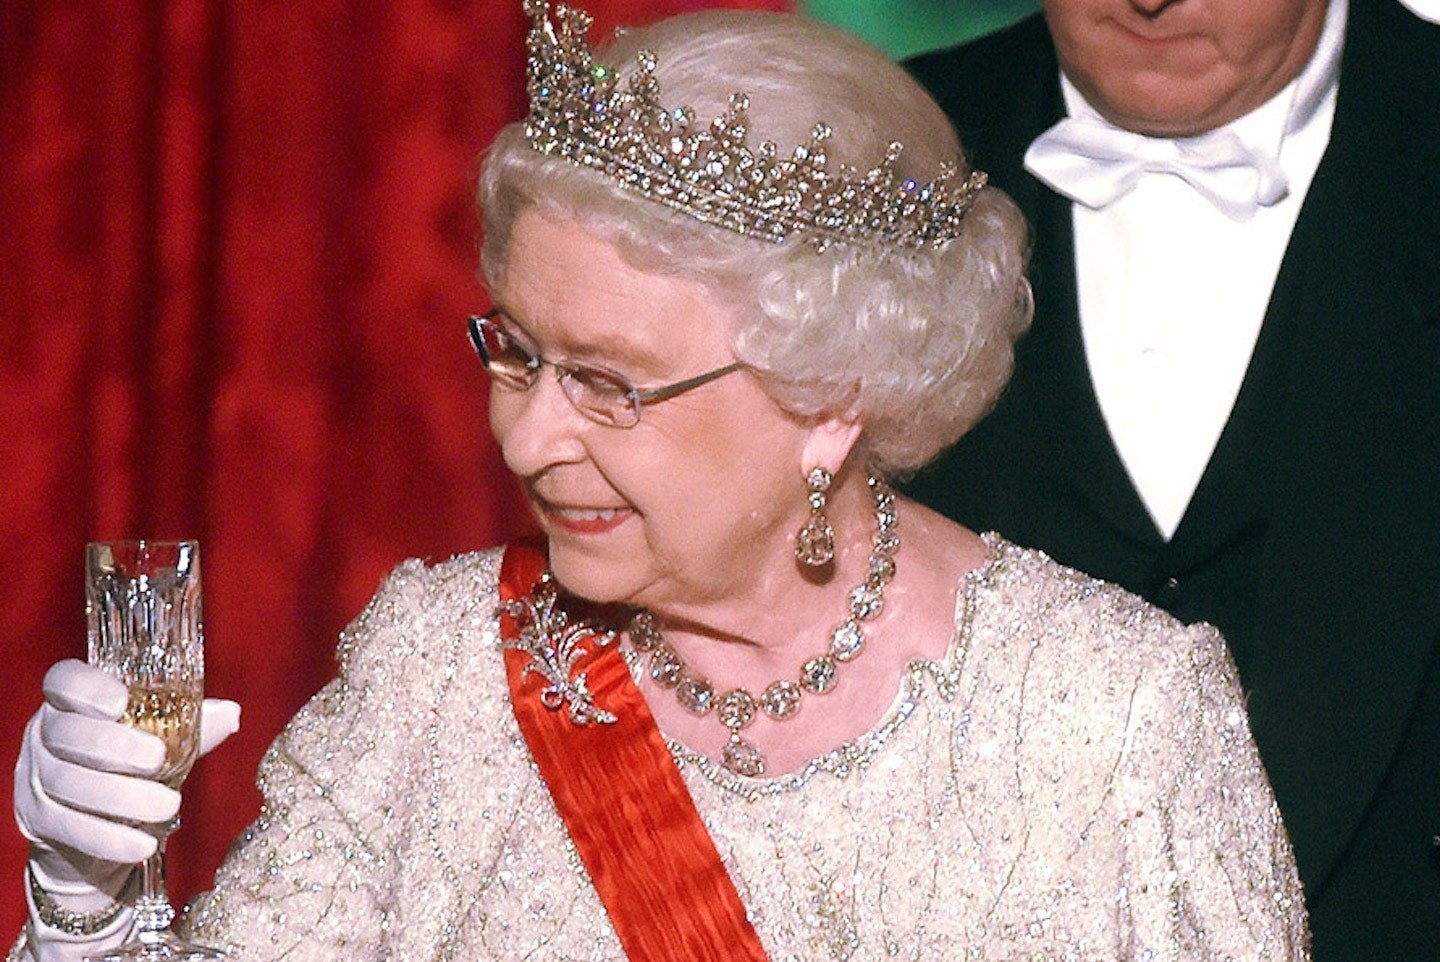 Medicii nu-i mai dau voie: Băutura la care trebuie să renunțe Regina Elisabeta a II-a. Rețeta unui cocktail regesc (VIDEO)